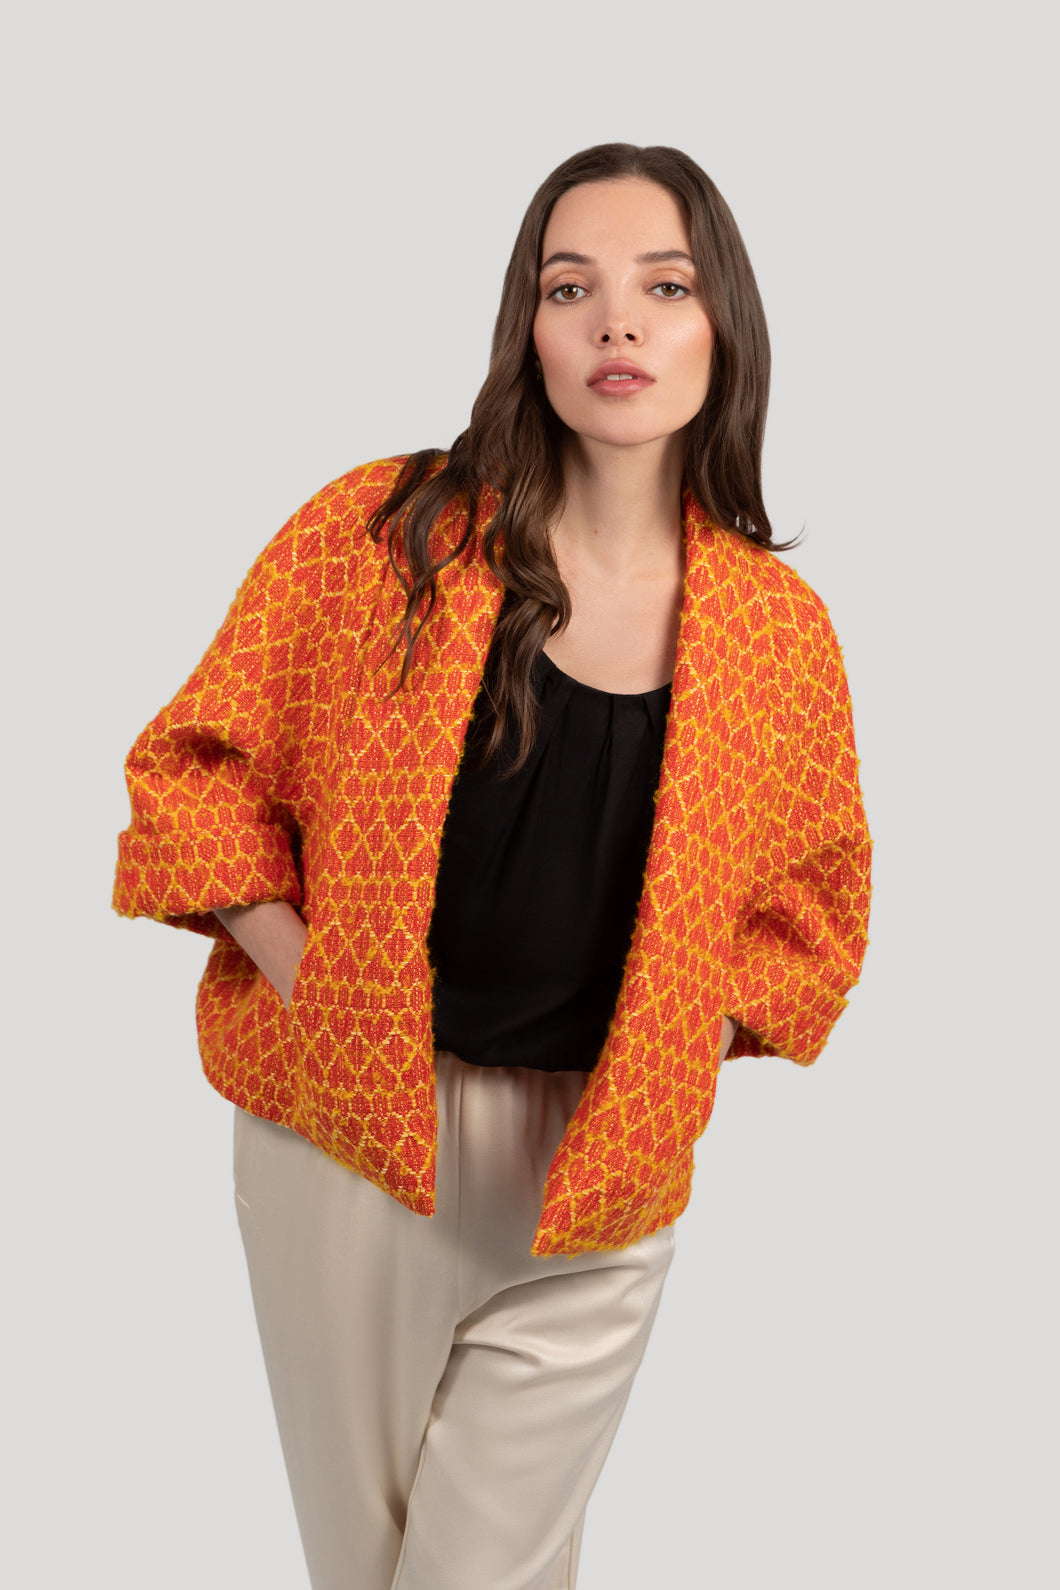 Estelle Cape Jacket - Red Orange Heart Pattern Tweed